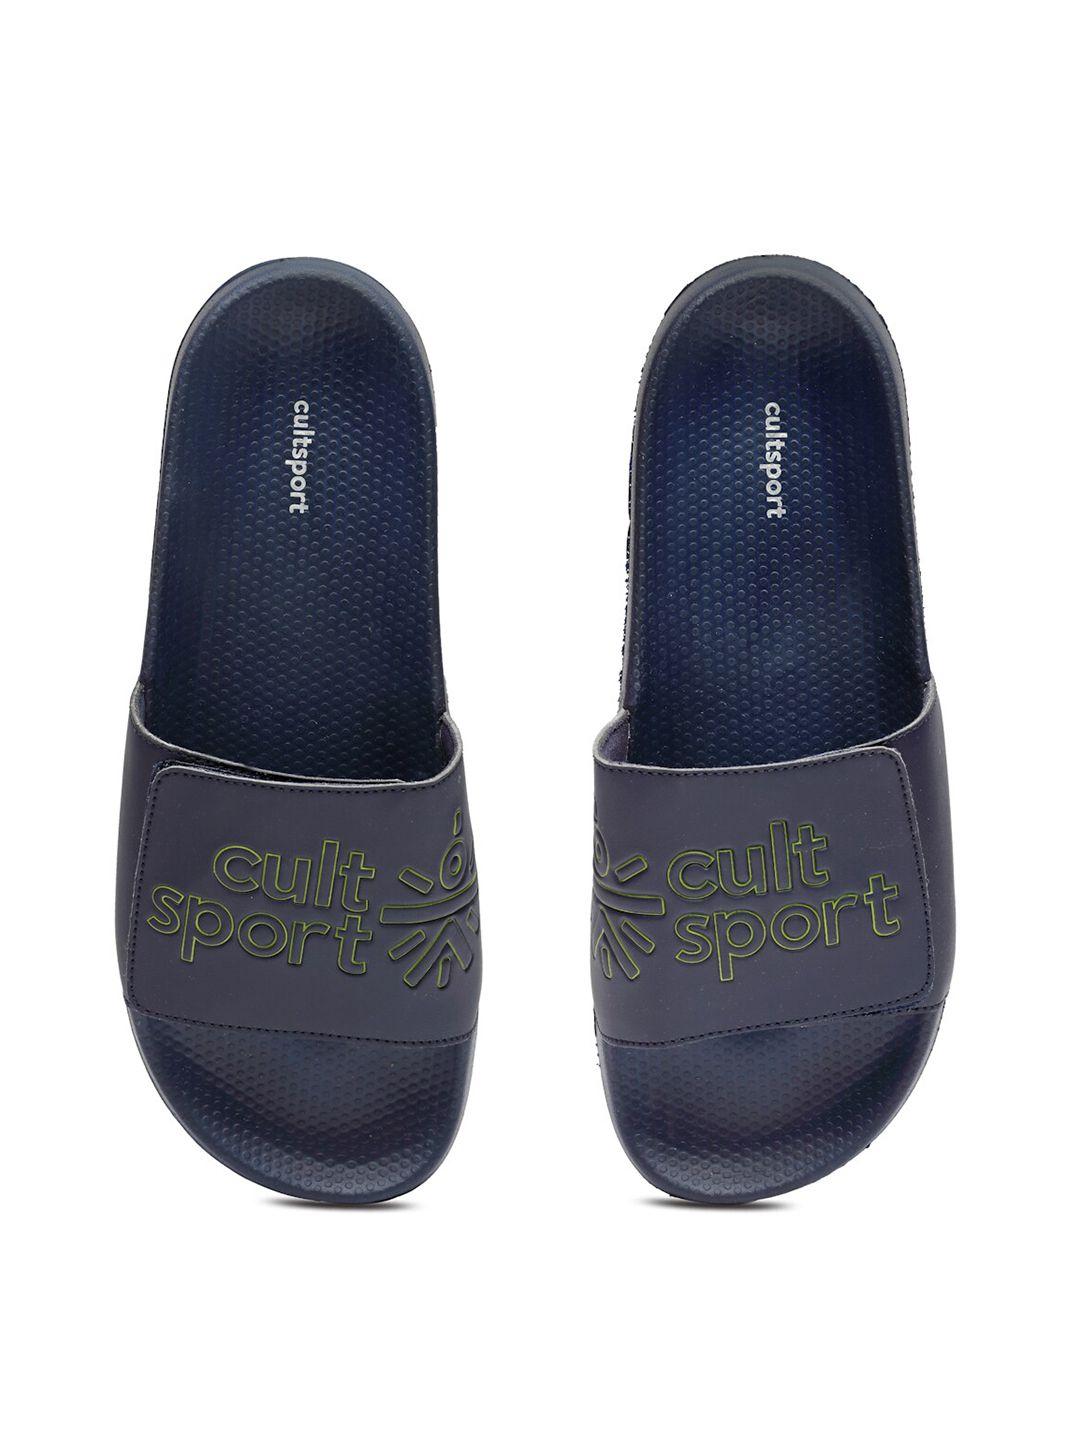 cultsport men navy blue flip flops